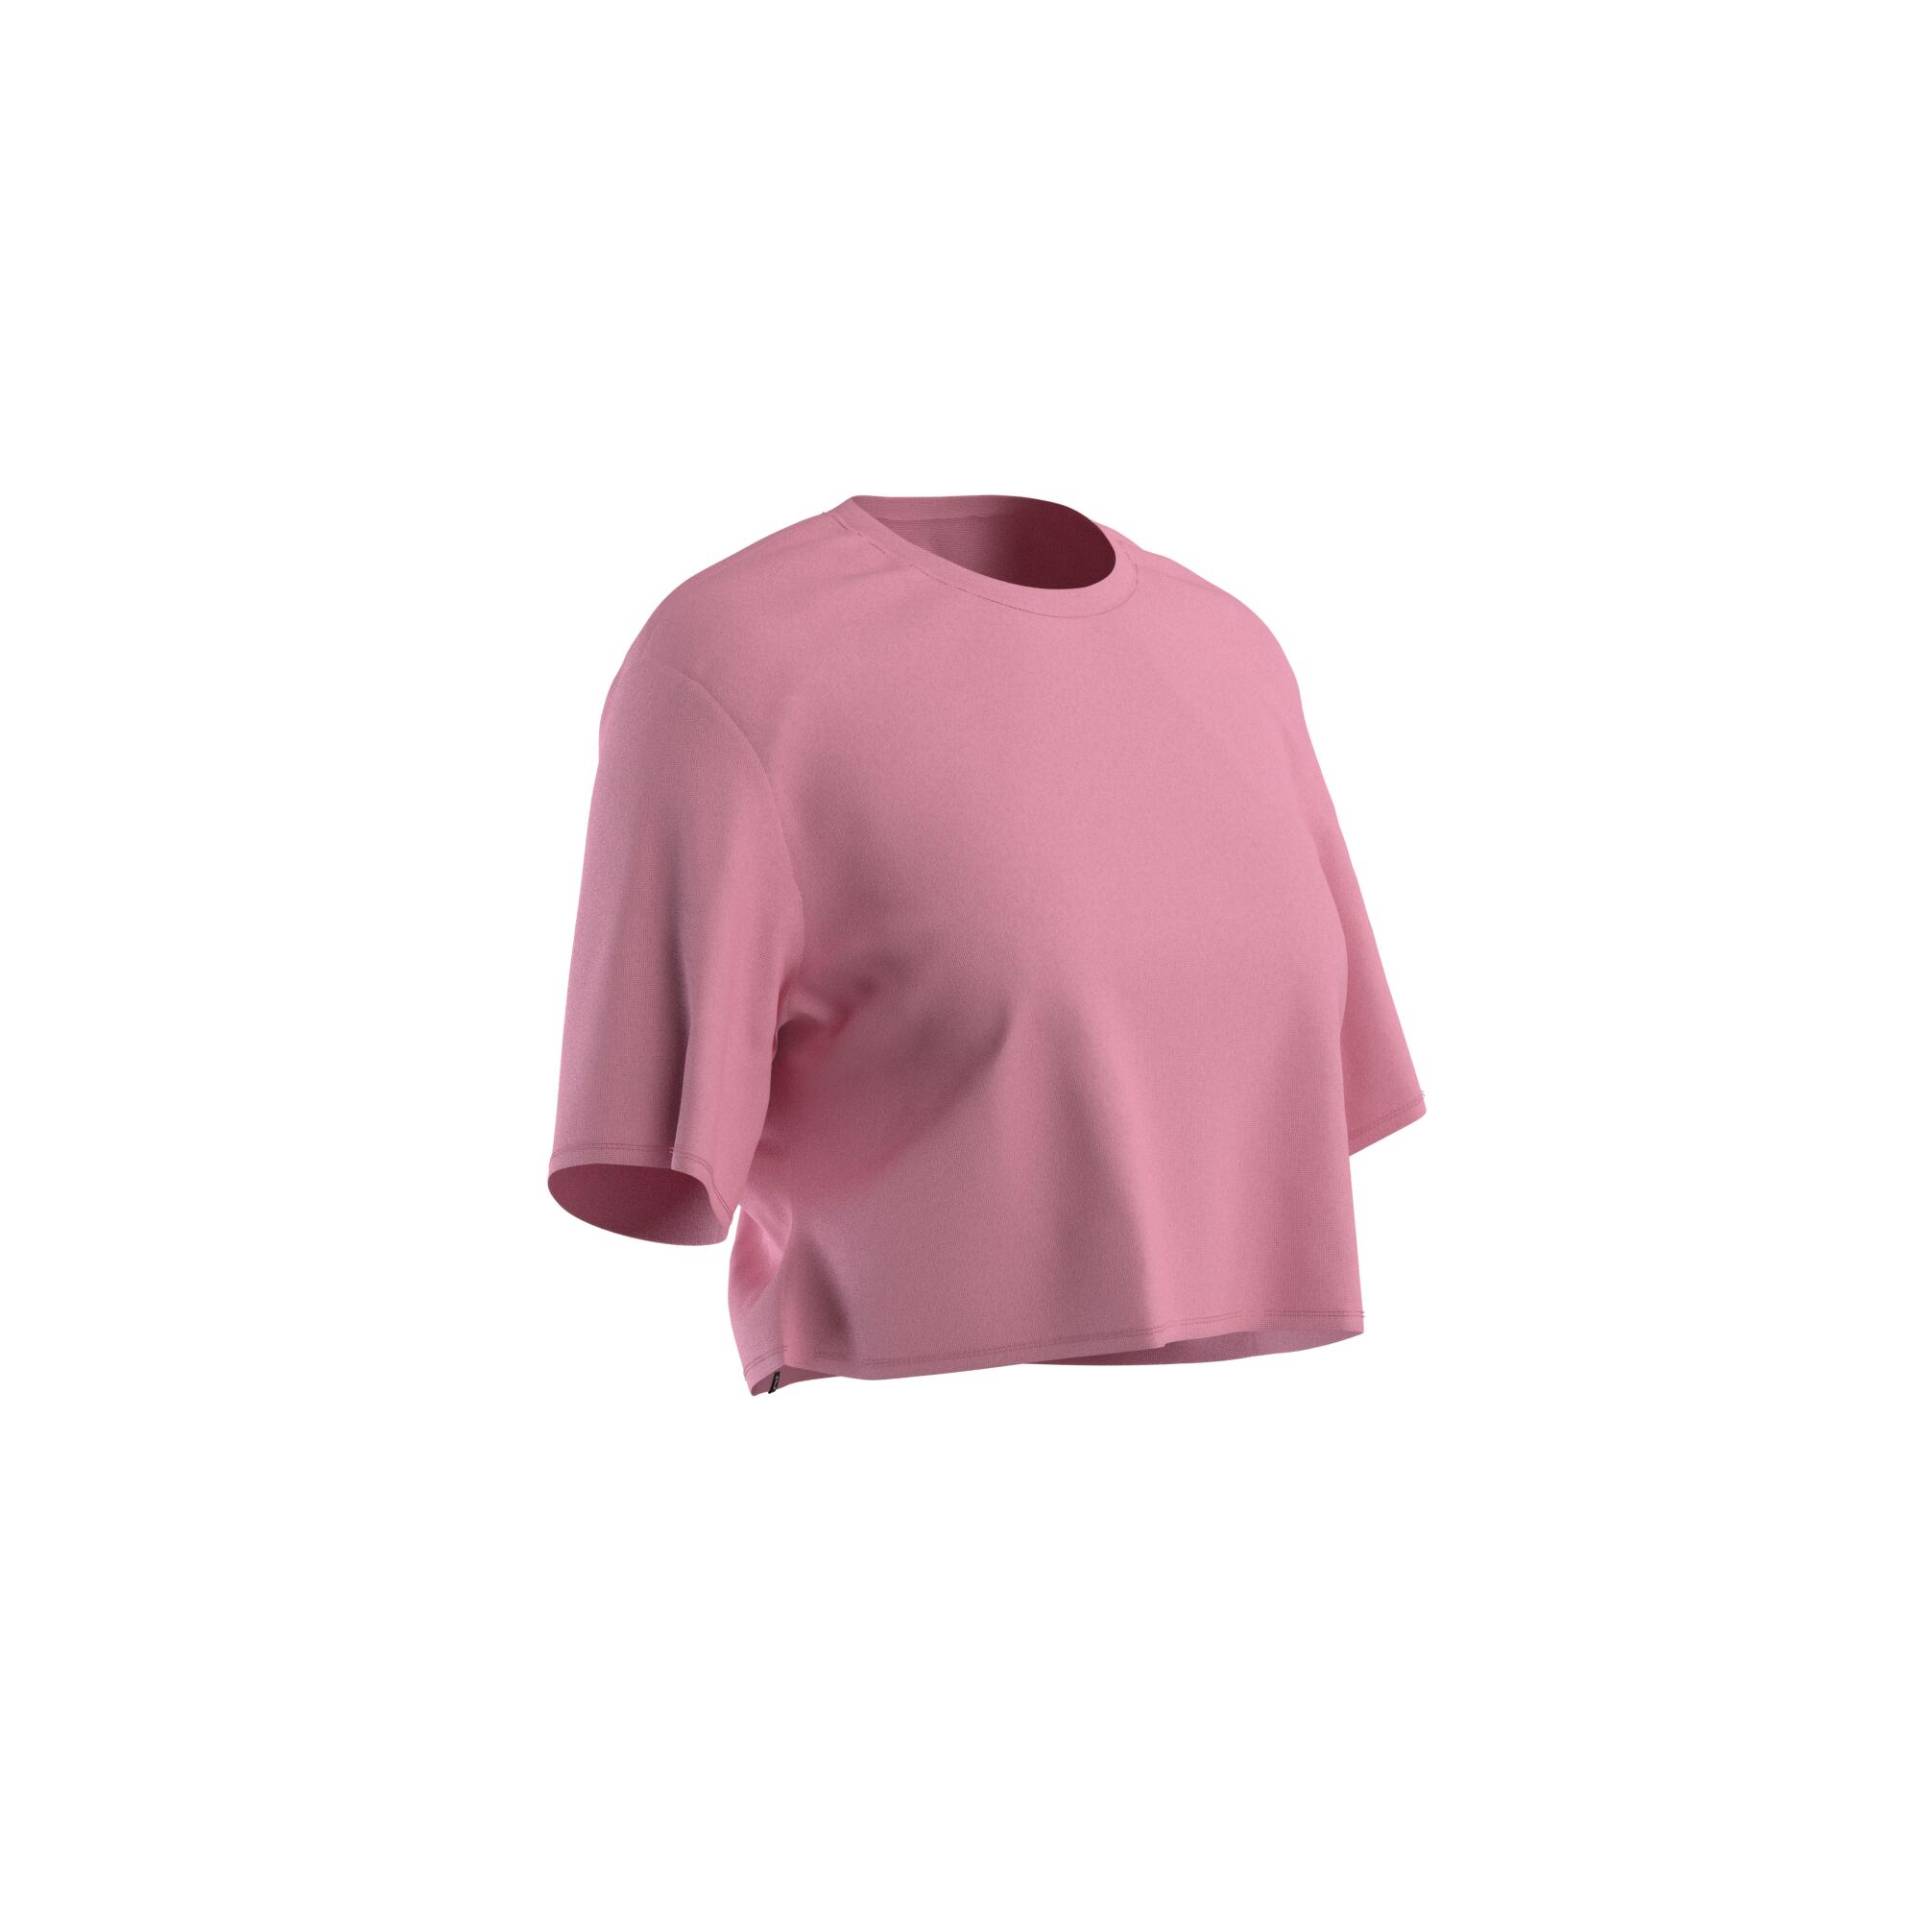 T-Shirt Crop Top Damen - 520 hellrosa von Domyos